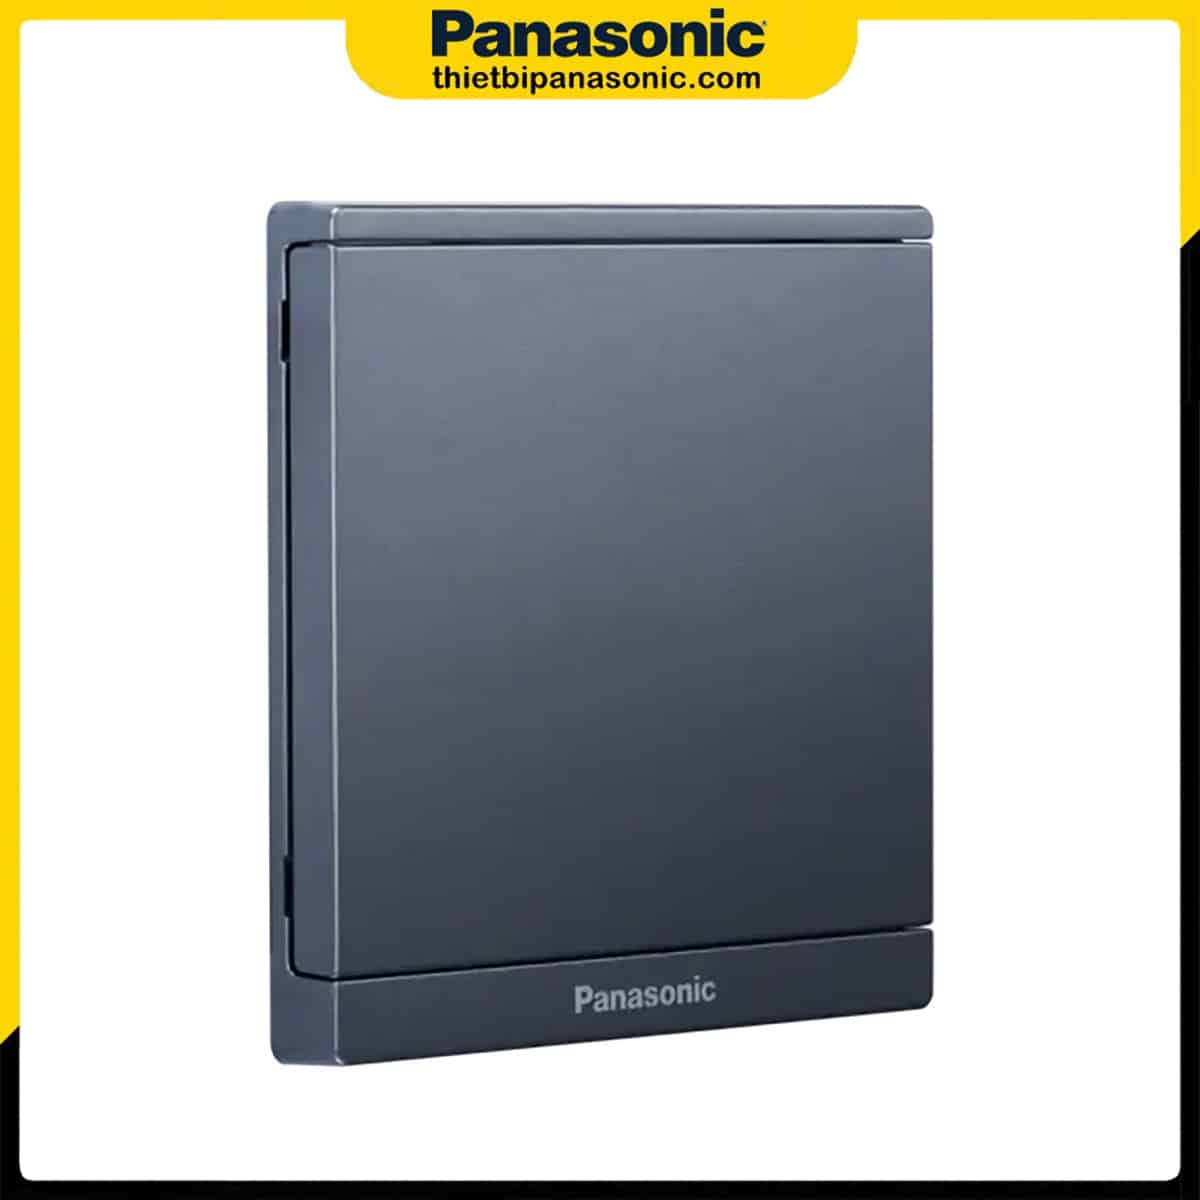 Mặt kín đơn Moderva Panasonic màu xám ánh kim WMF6891MYH-VN